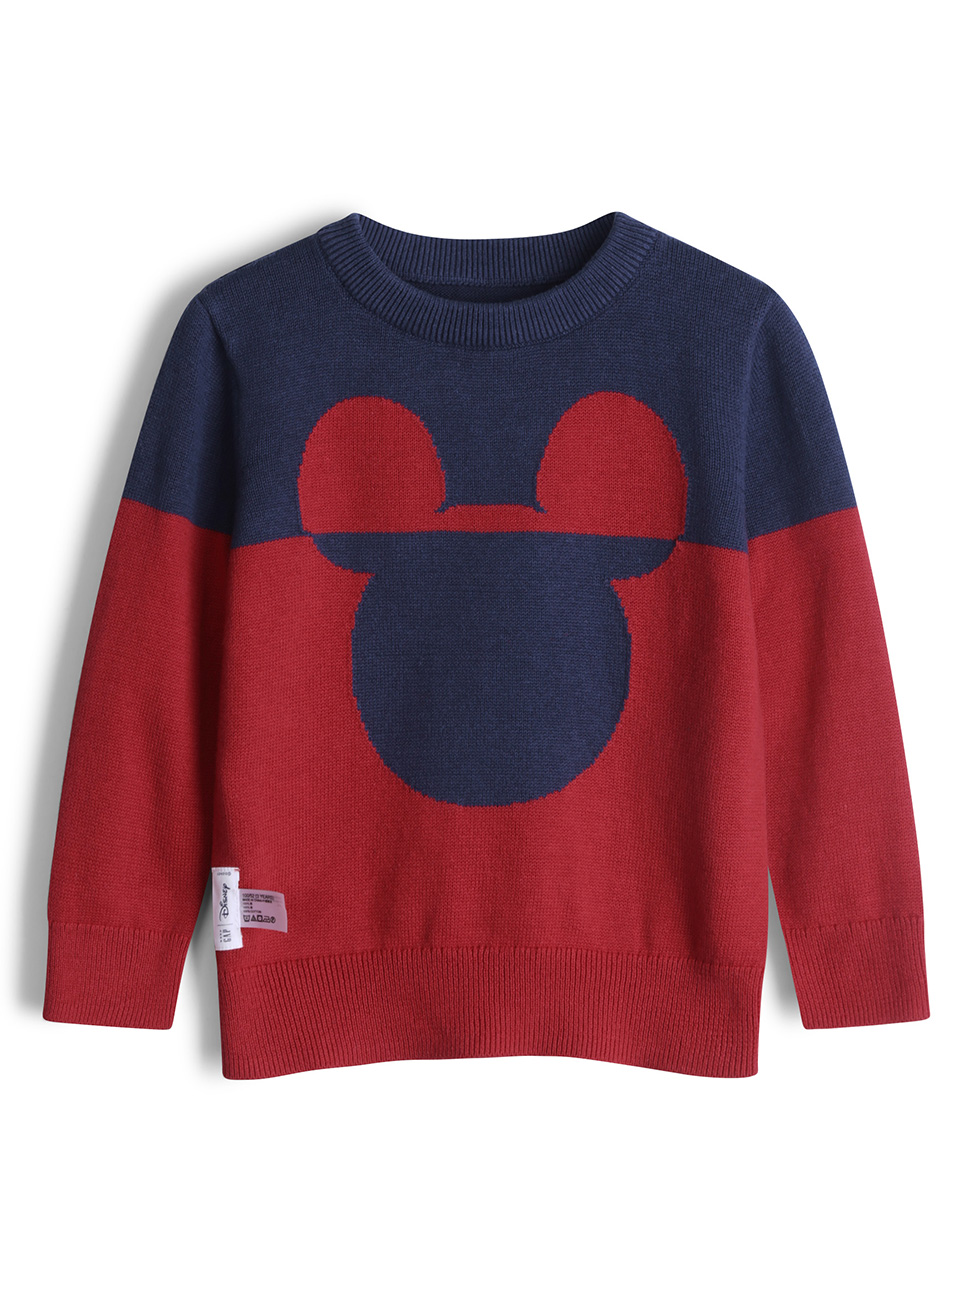 男幼童裝|Gap x Disney迪士尼聯名 米奇毛衣-熱情紅